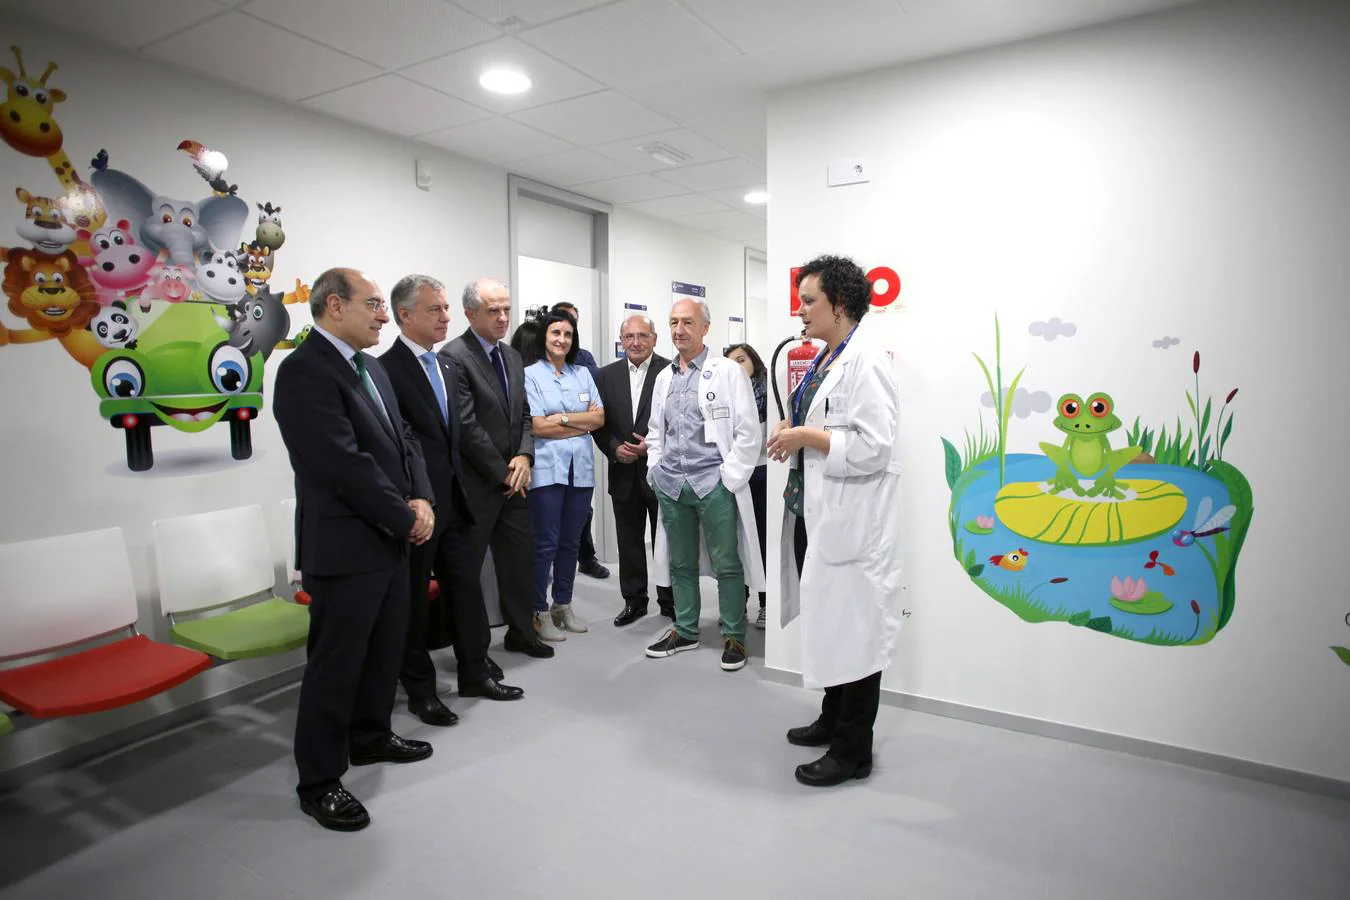 Inauguración del centro de salud de Zestoa